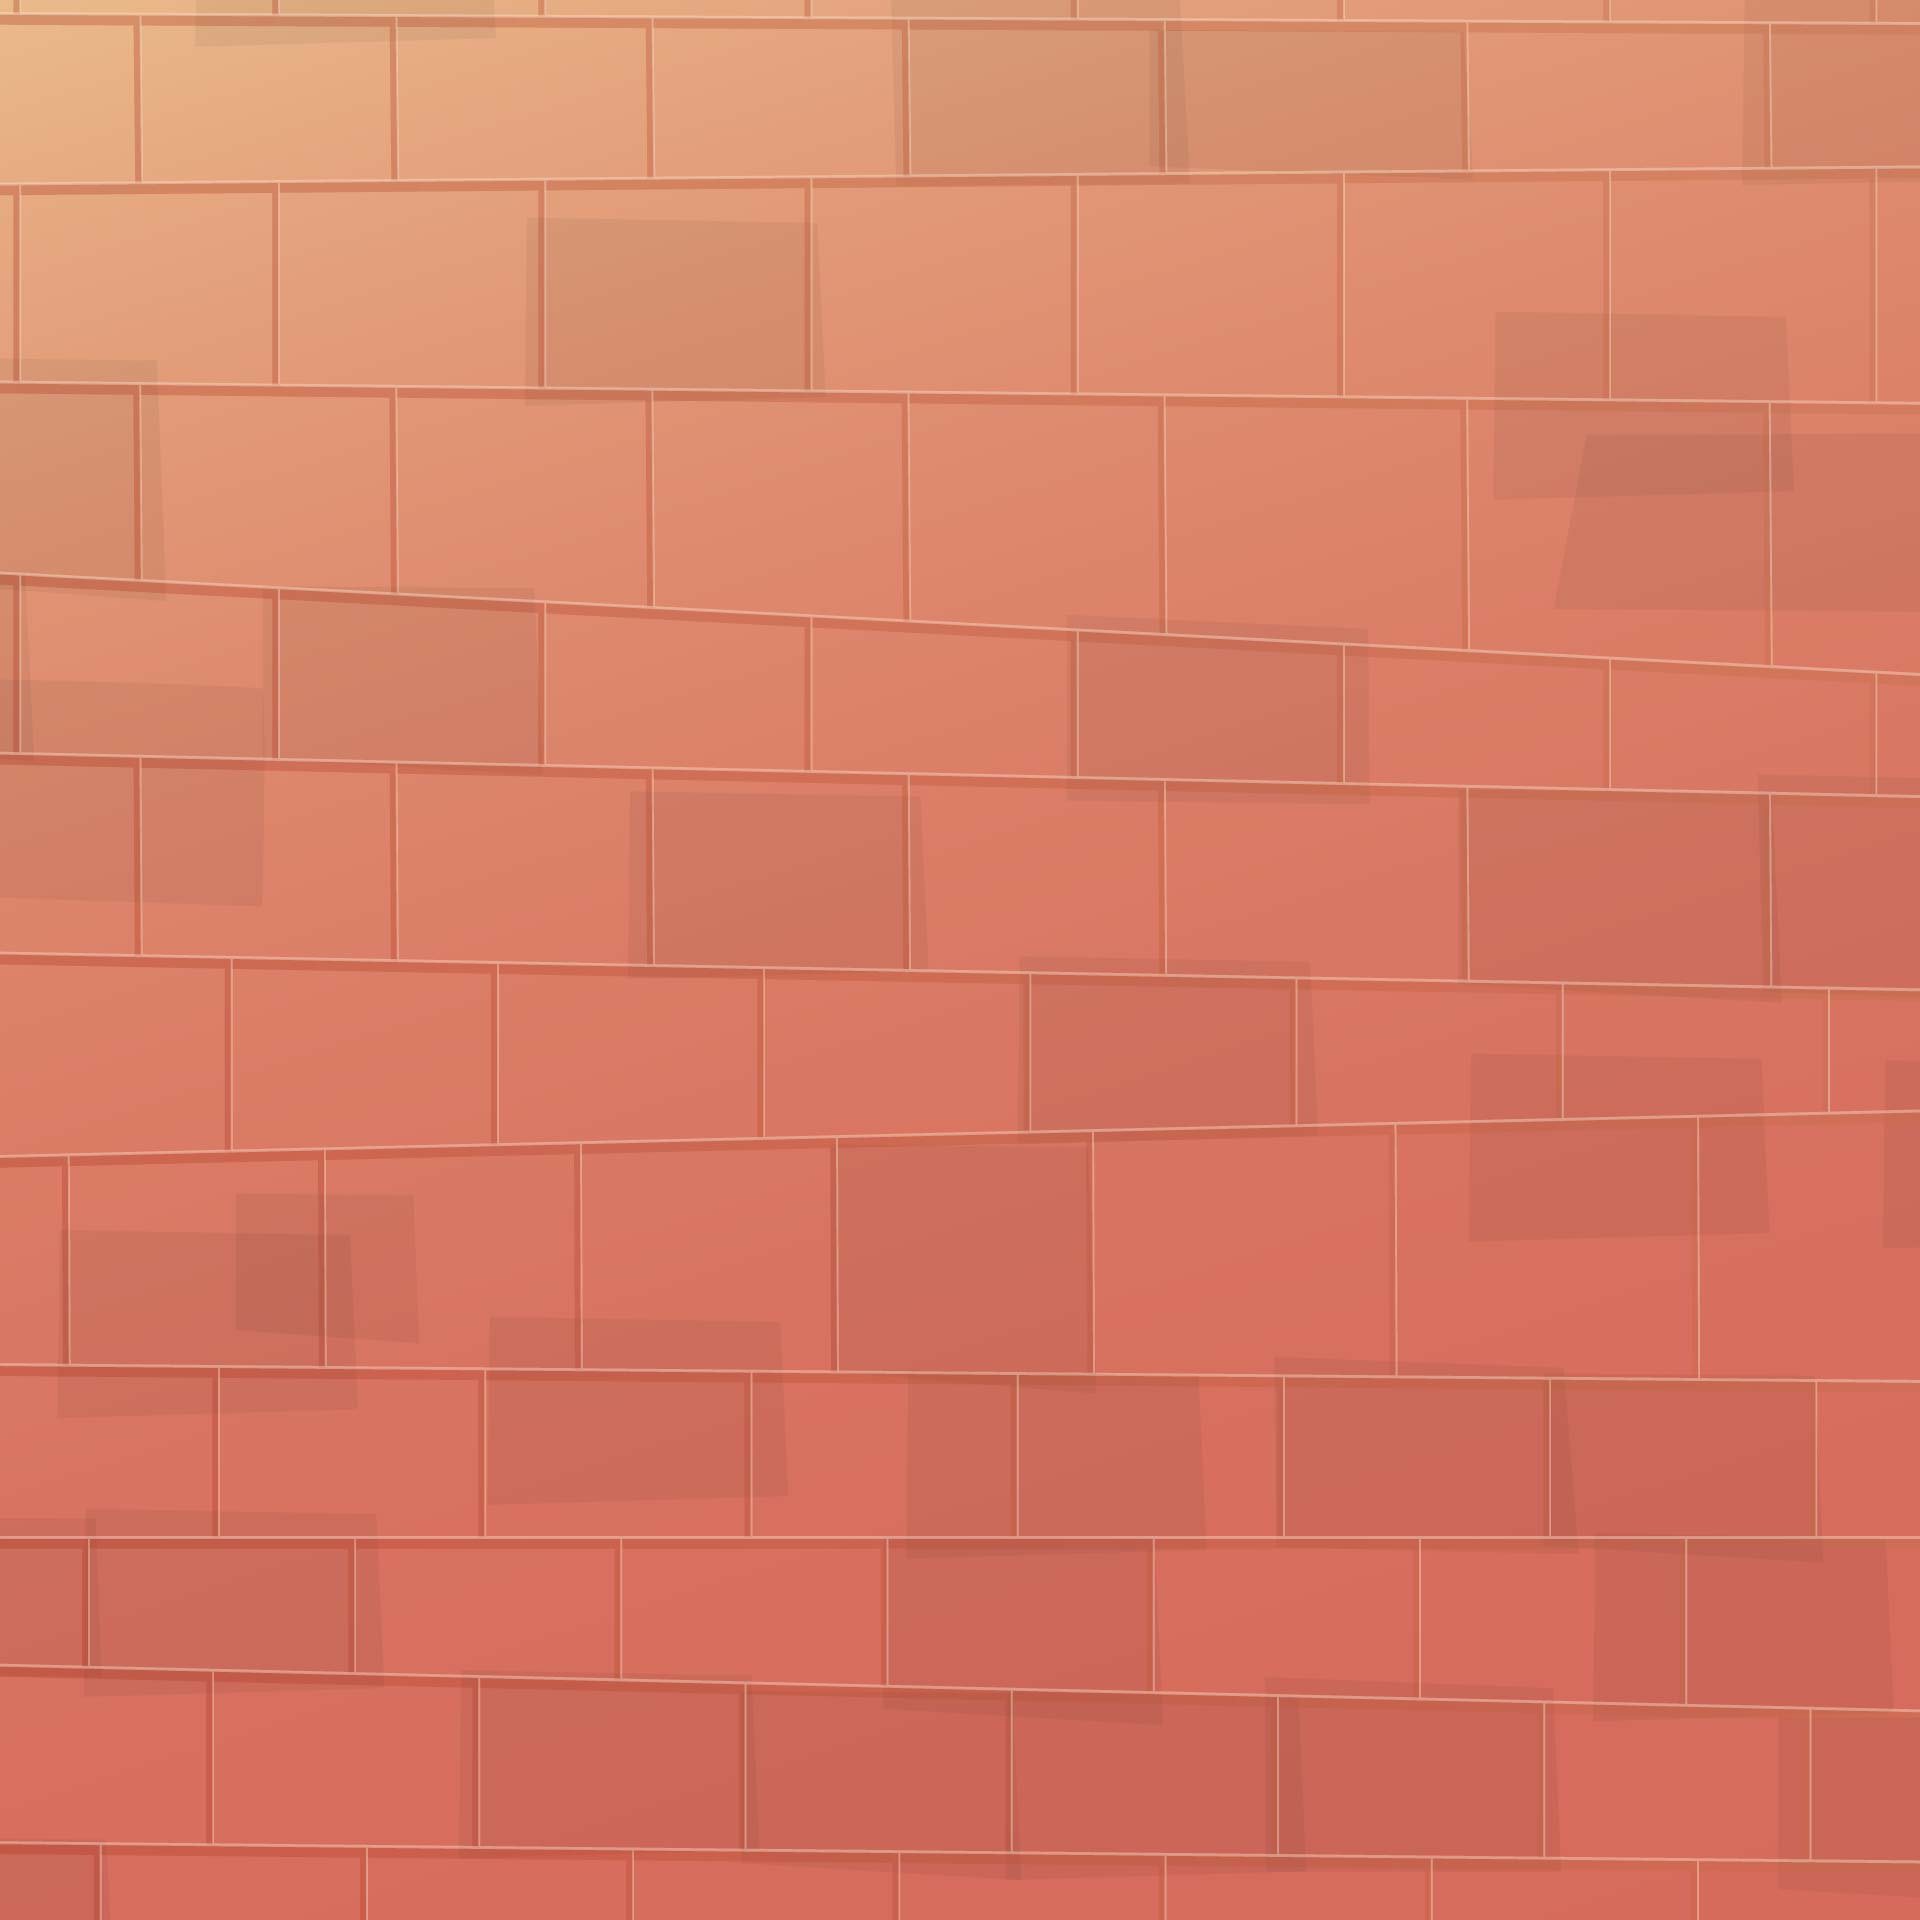 5 Best Images of Printable Brick Pattern Printable Brick Pattern Wall